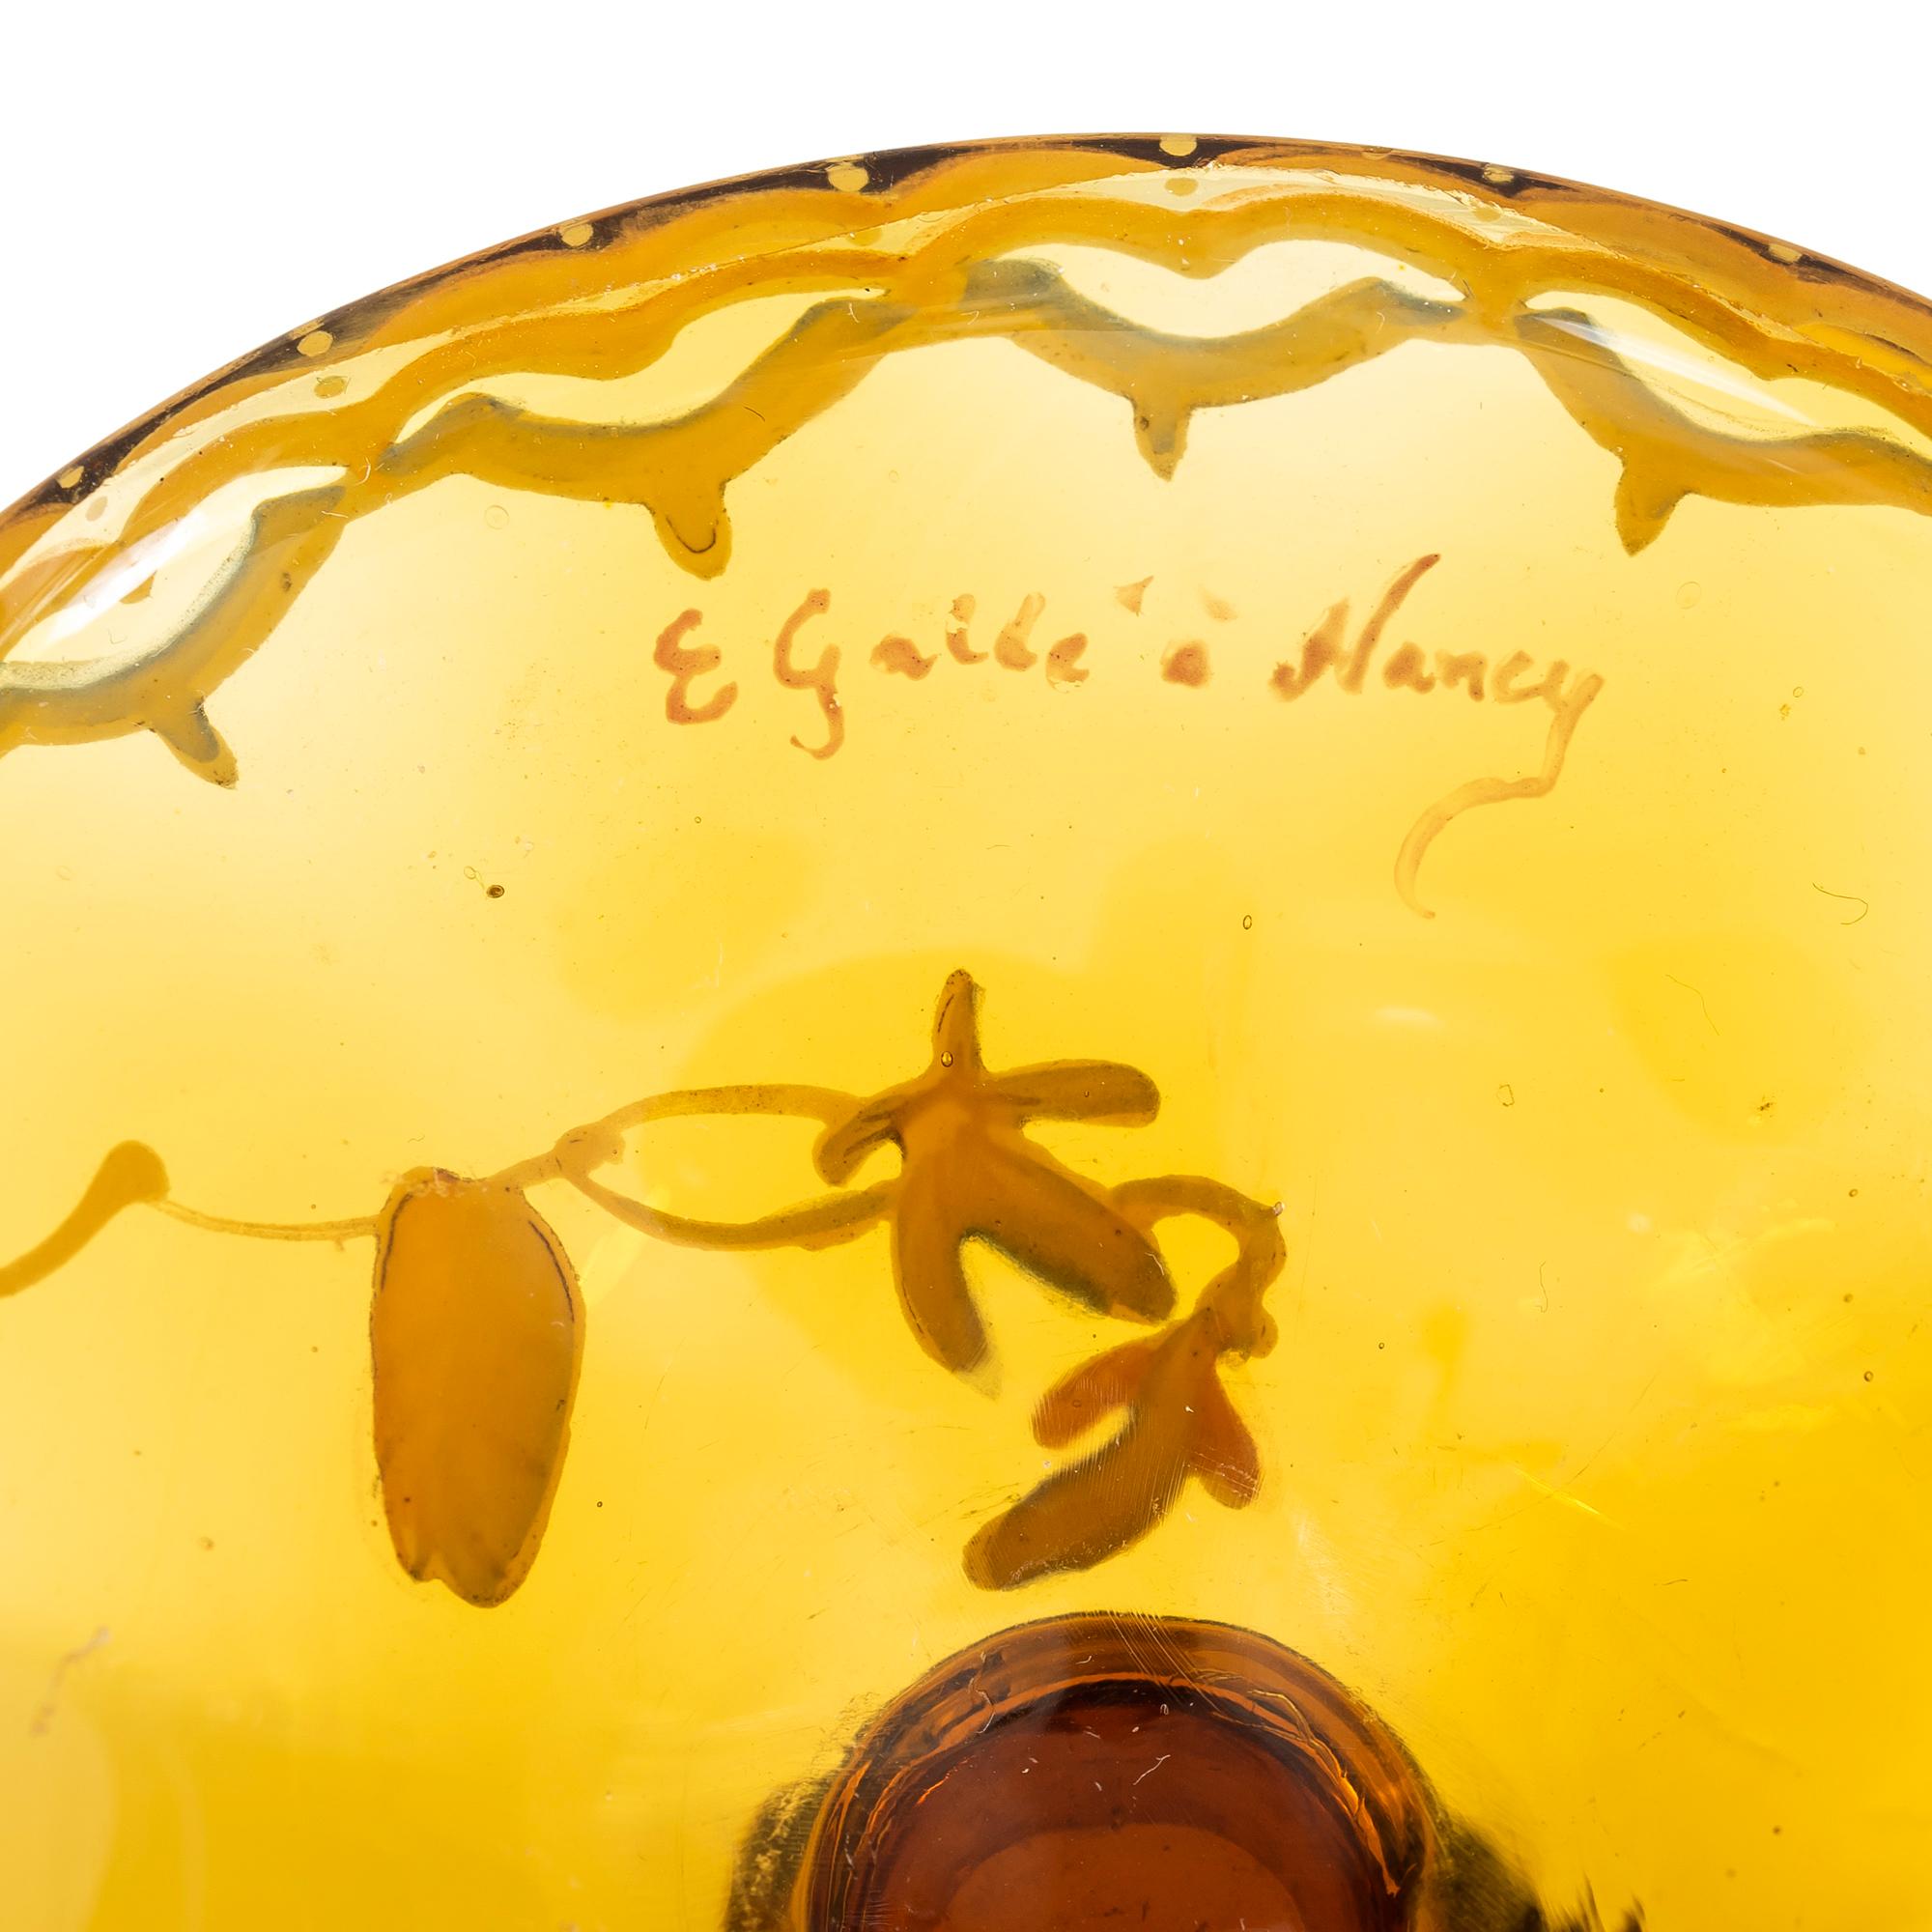 Émile Gallé (1846-1904)
Eine frühe Galle Cameo Glas Stielvase
Frankreich, um 1910
Vergoldete Unterschrift E Gallé Nancy
Maße: Höhe 5 1/2 in. (13,97 cm.), Durchmesser 3 1/2 in. (8,89 cm.)
Literatur:
Alastair Duncan und Georges de Bartha, Glass